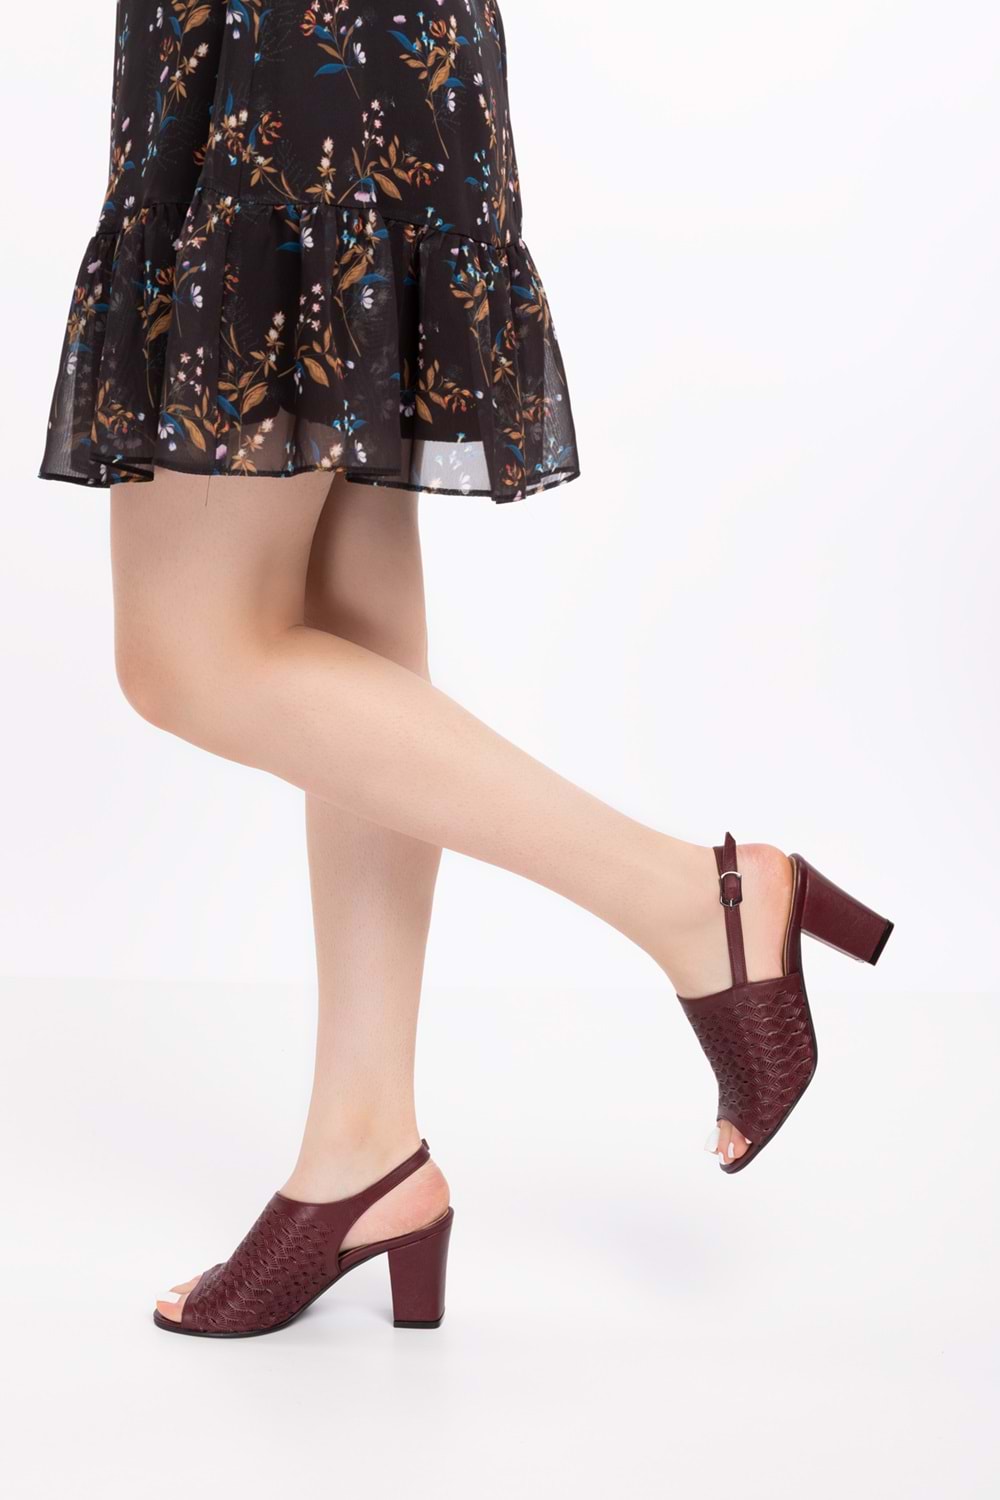 Gondol Kadın Hakiki Deri Lazer Kesim Klasik Topuklu Ayakkabı şhn.835 - Bordo - 39